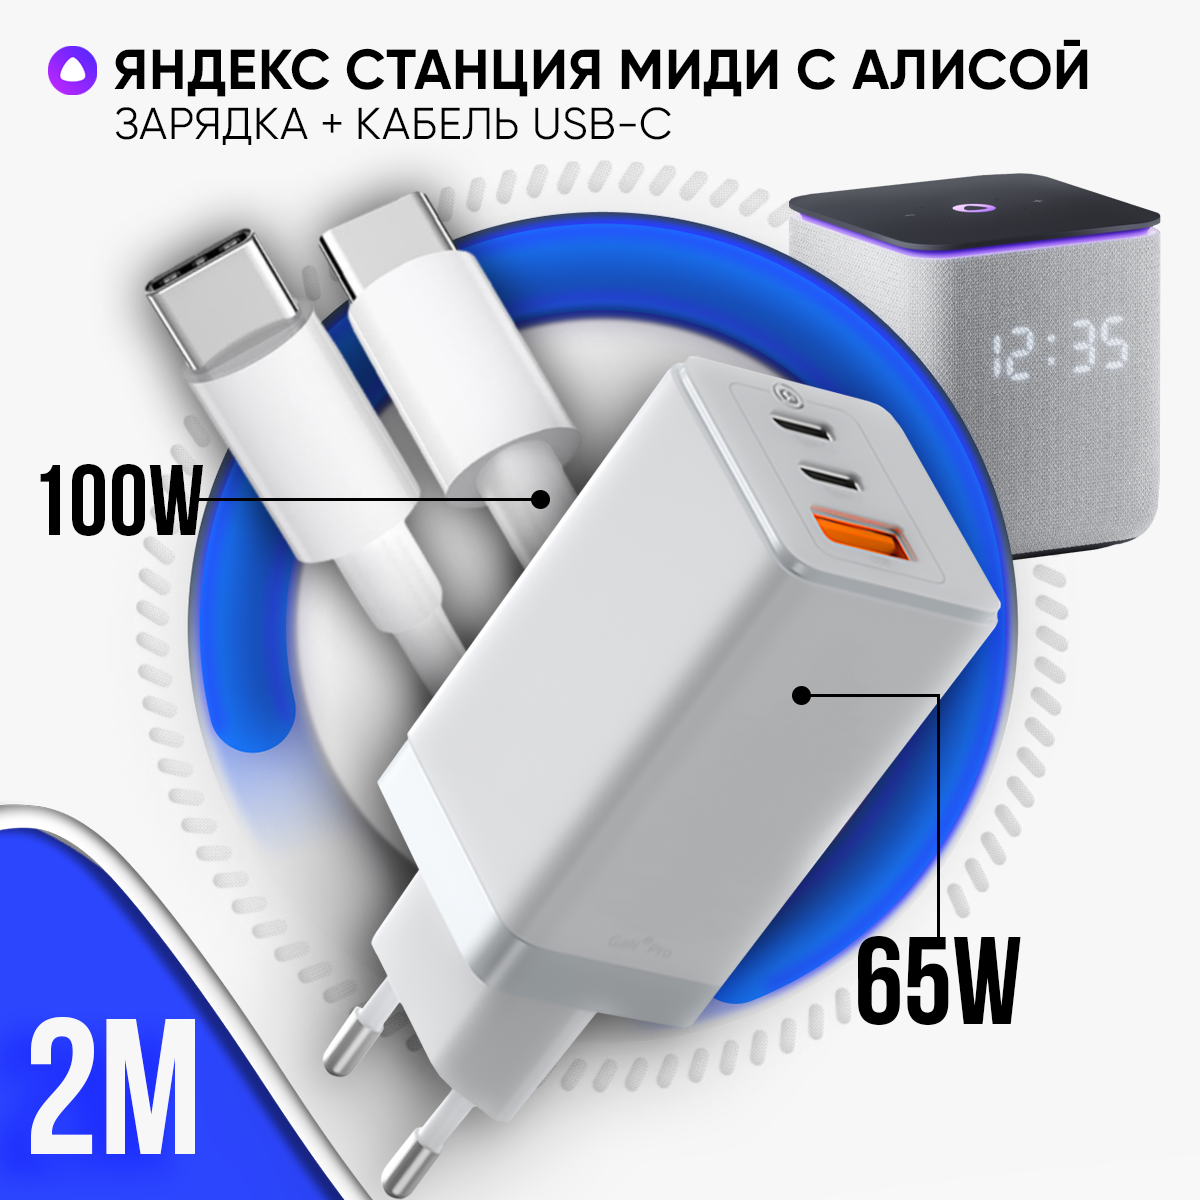 Блок питания черный 65W для Яндекс Станции Миди с Алисой + кабель USB Type-C / Type-C до 100W 2 метра